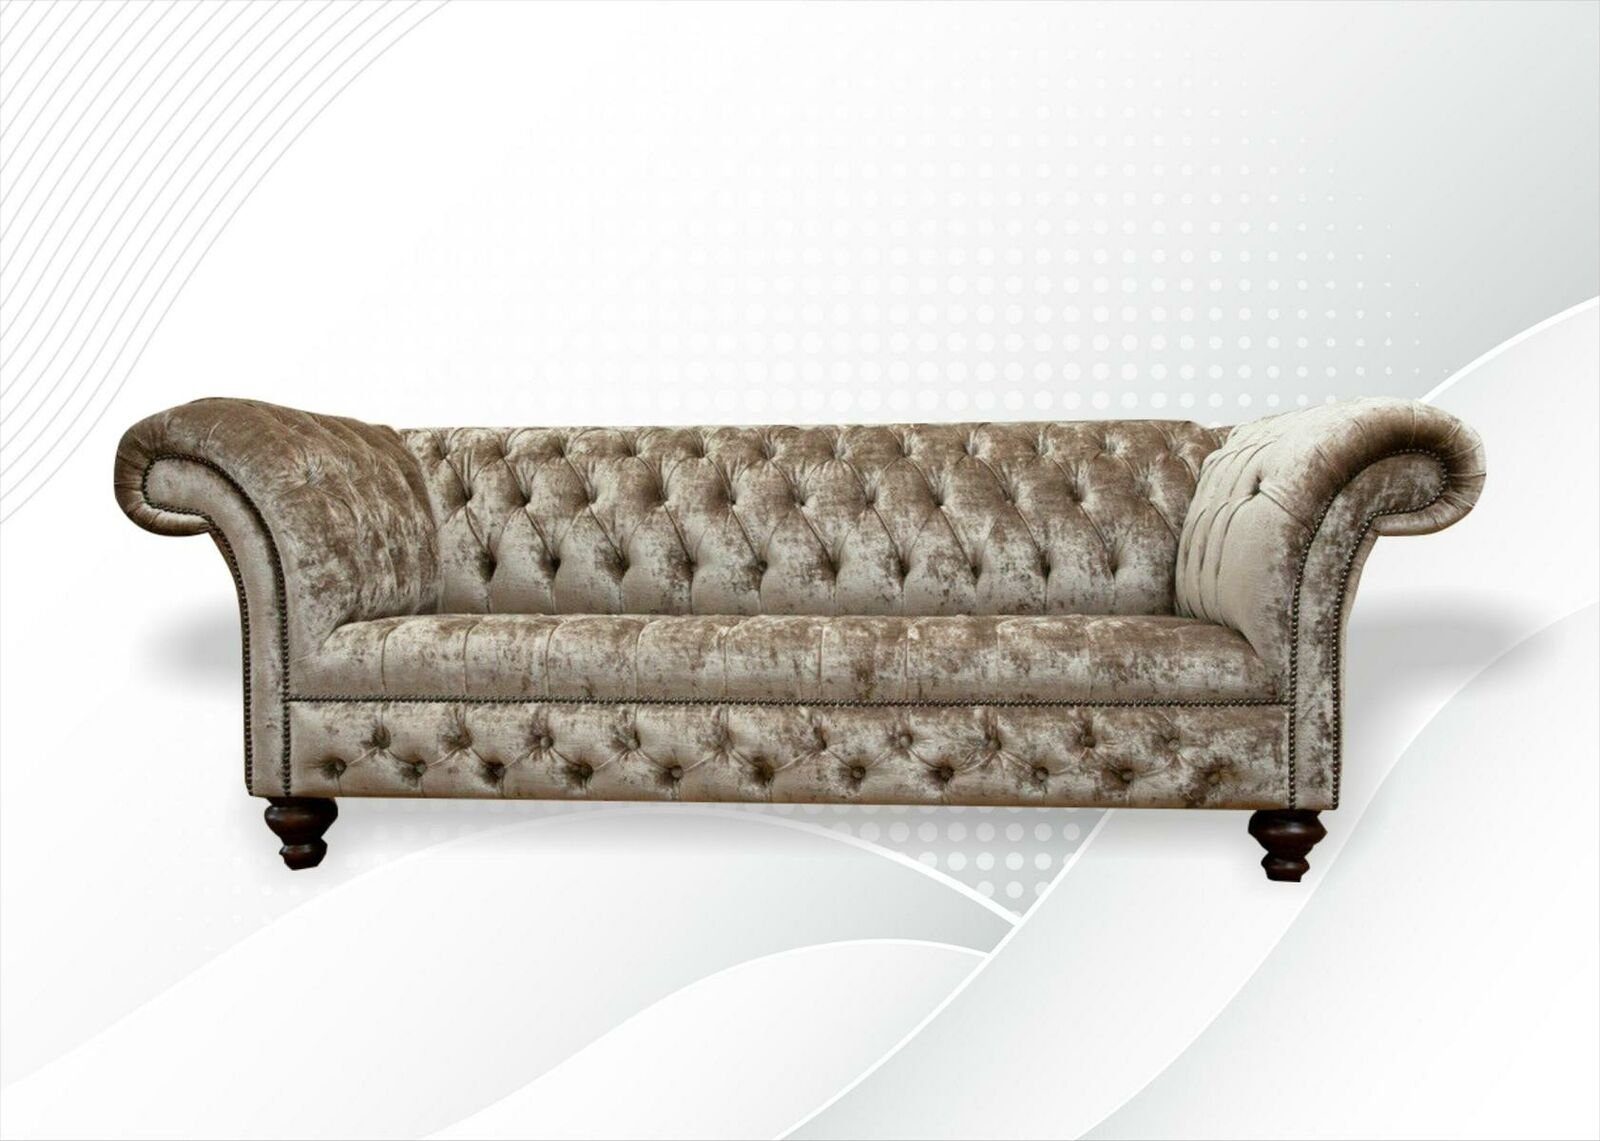 JVmoebel Chesterfield-Sofa Nerz Farbe Chesterfield 3-Sitzer luxus Möbel 3-er Modern Neu, Made in Europe